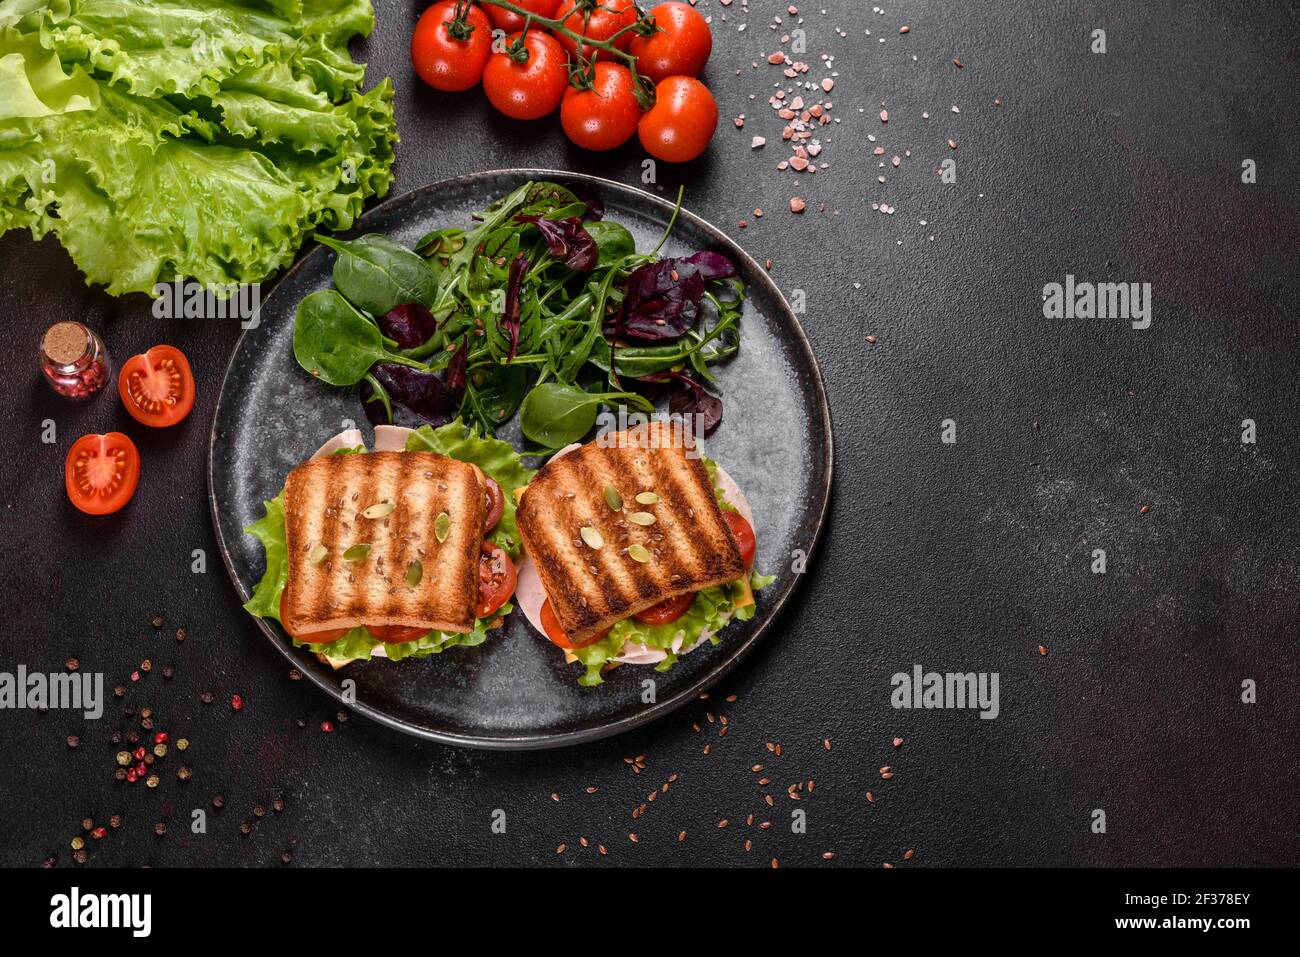 Délicieux sandwich avec toasts croquants, jambon, laitue et tomates. Petit déjeuner nourrissant rapide Banque D'Images